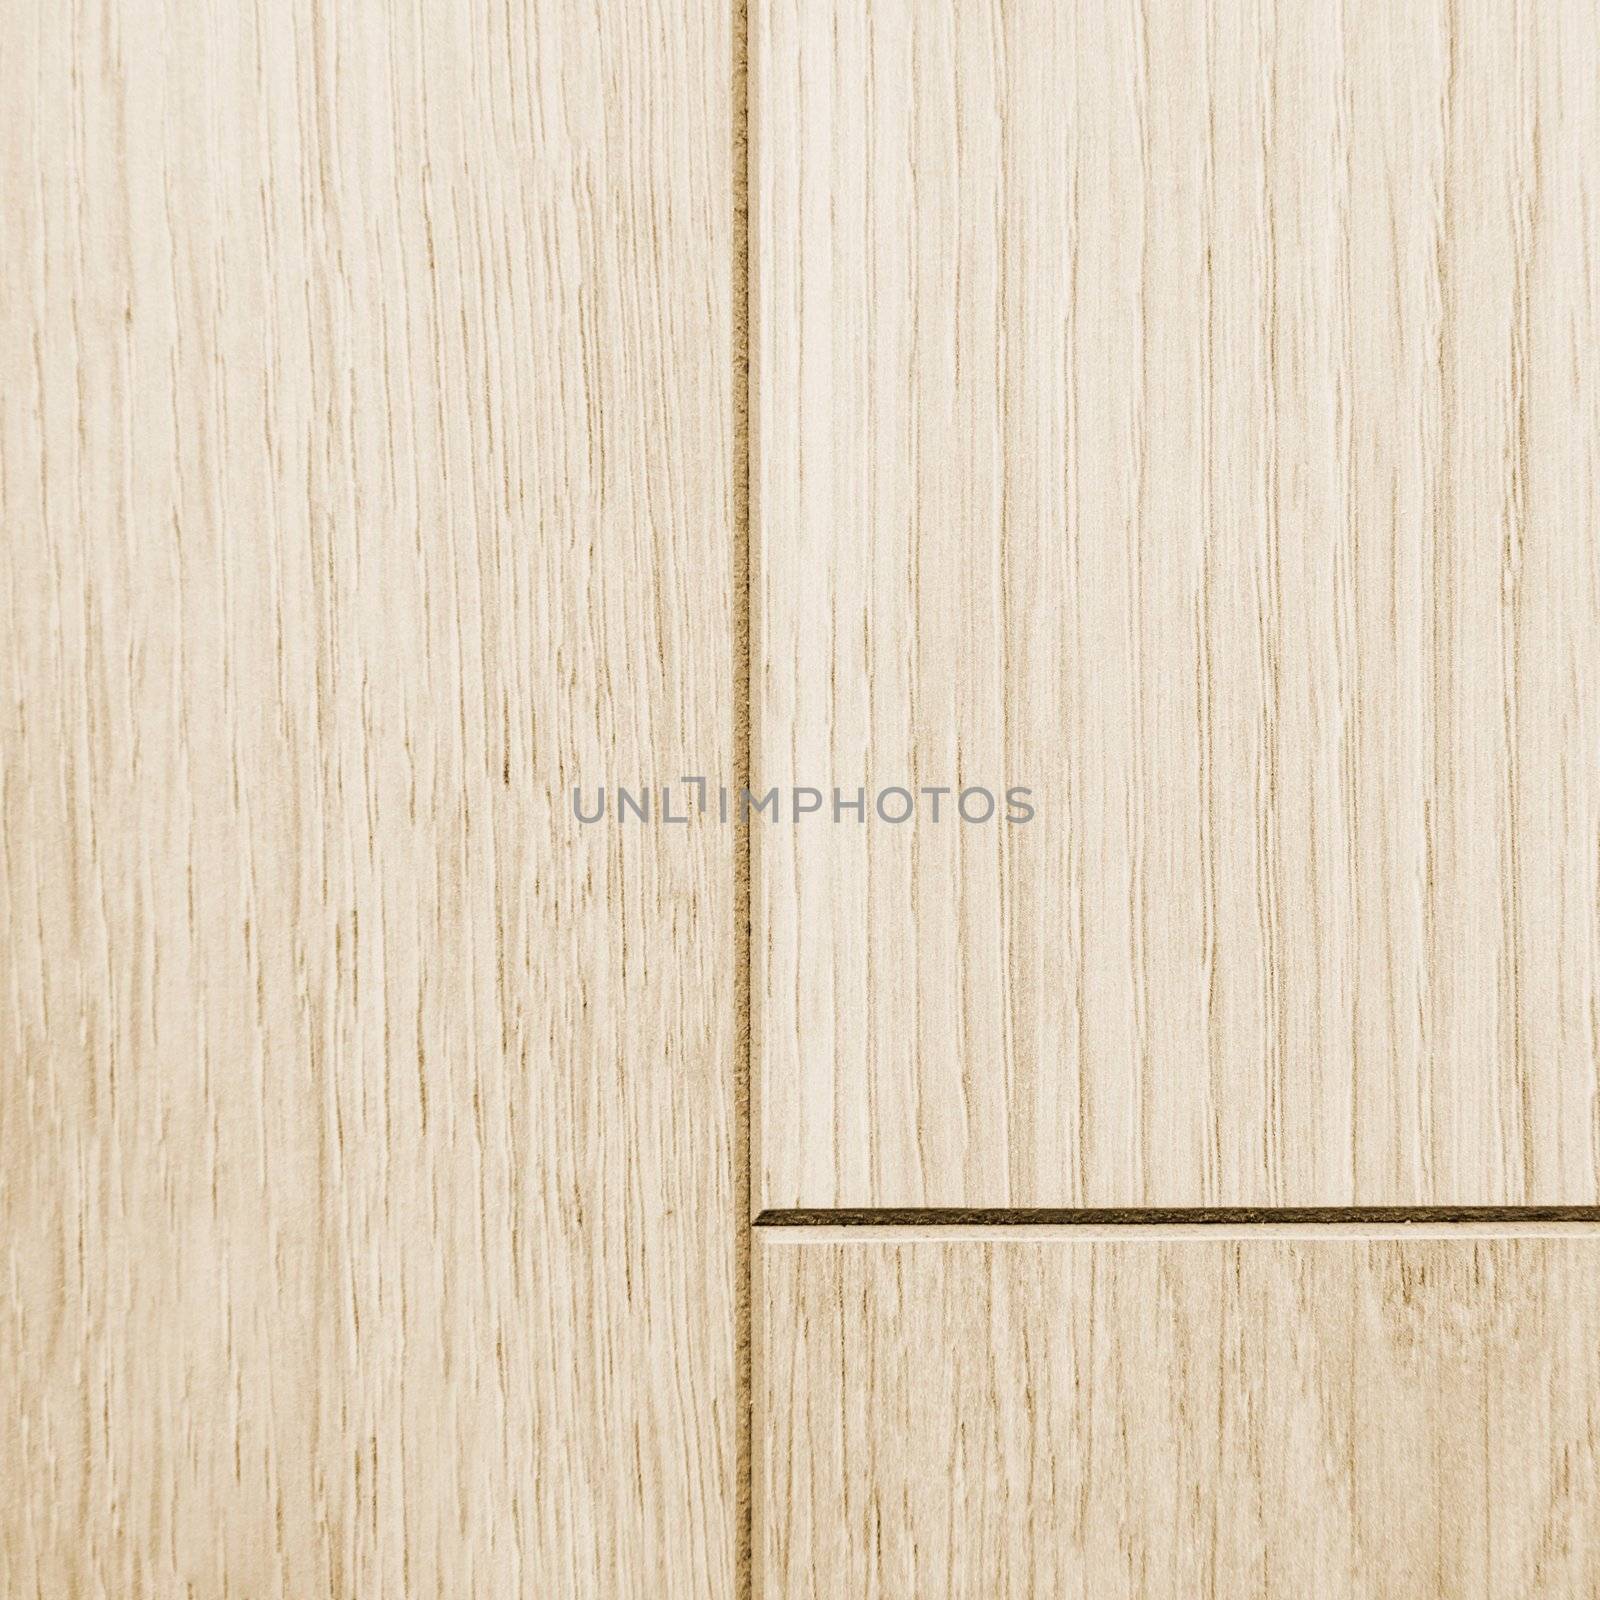 Wooden texture, floor panel by simpson33